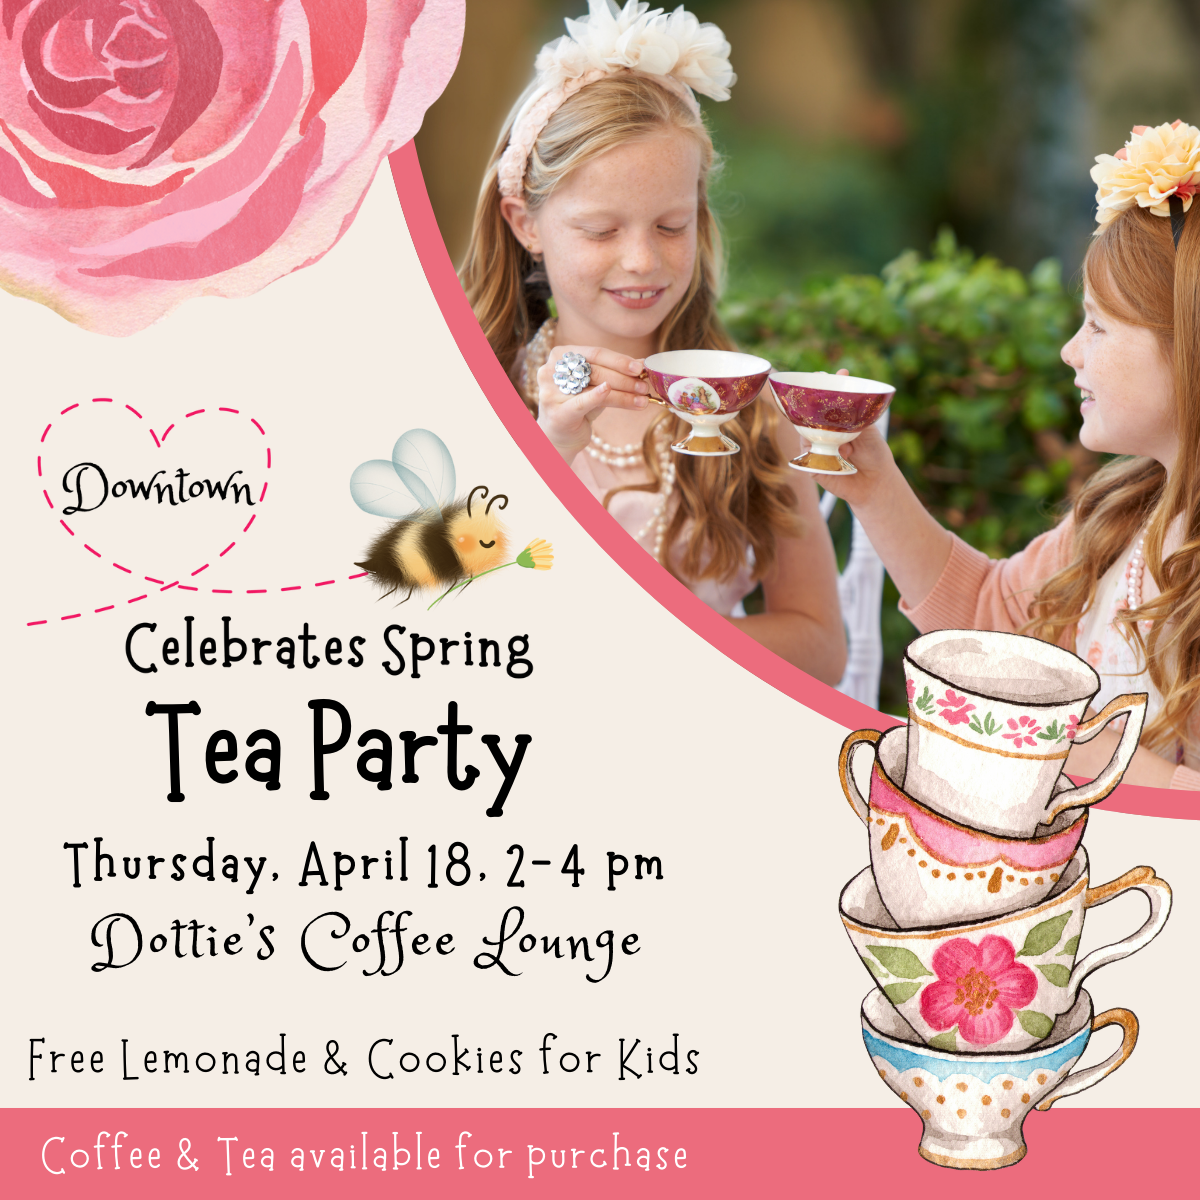 Downtown Celebrates Spring Tea Party